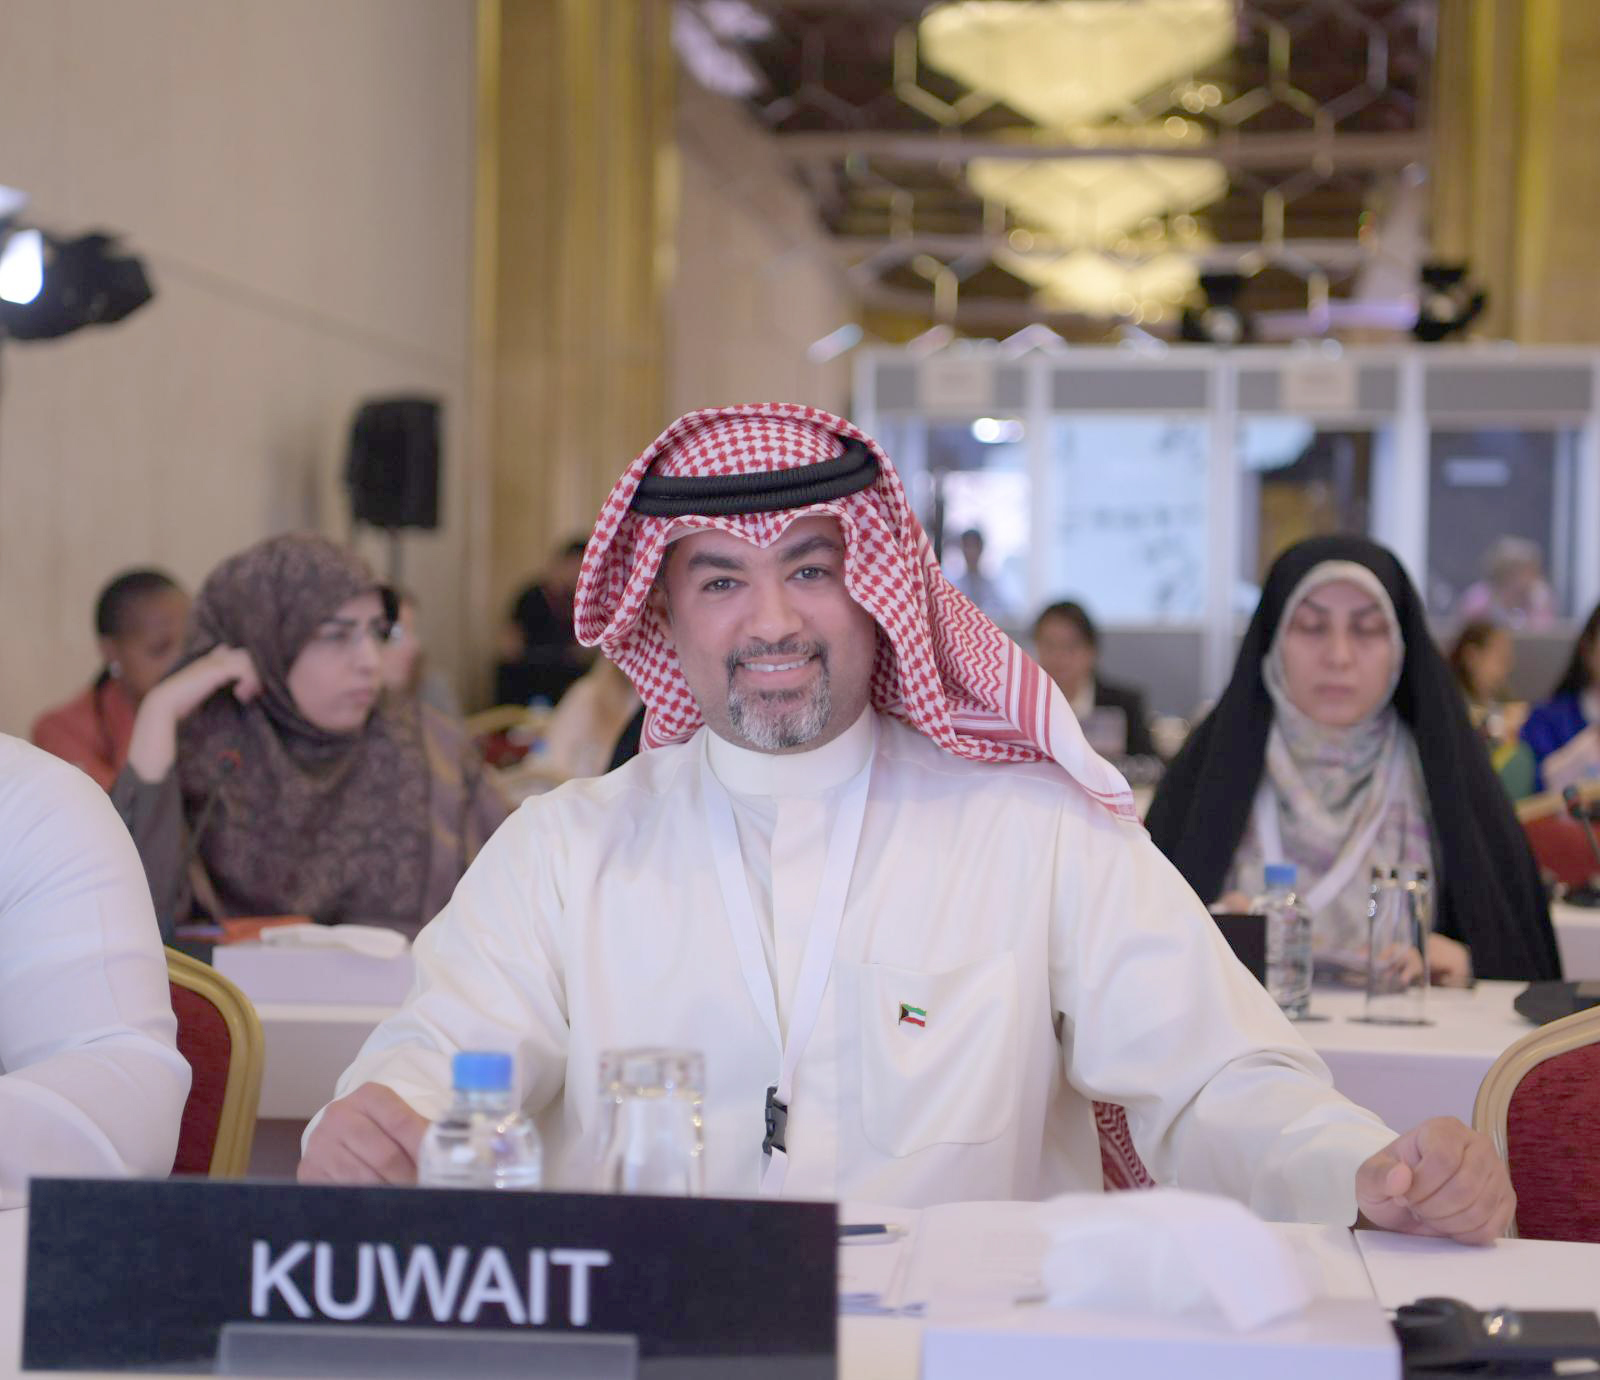 Member of Kuwaiti Parliament Omar Al-Tabtabaie